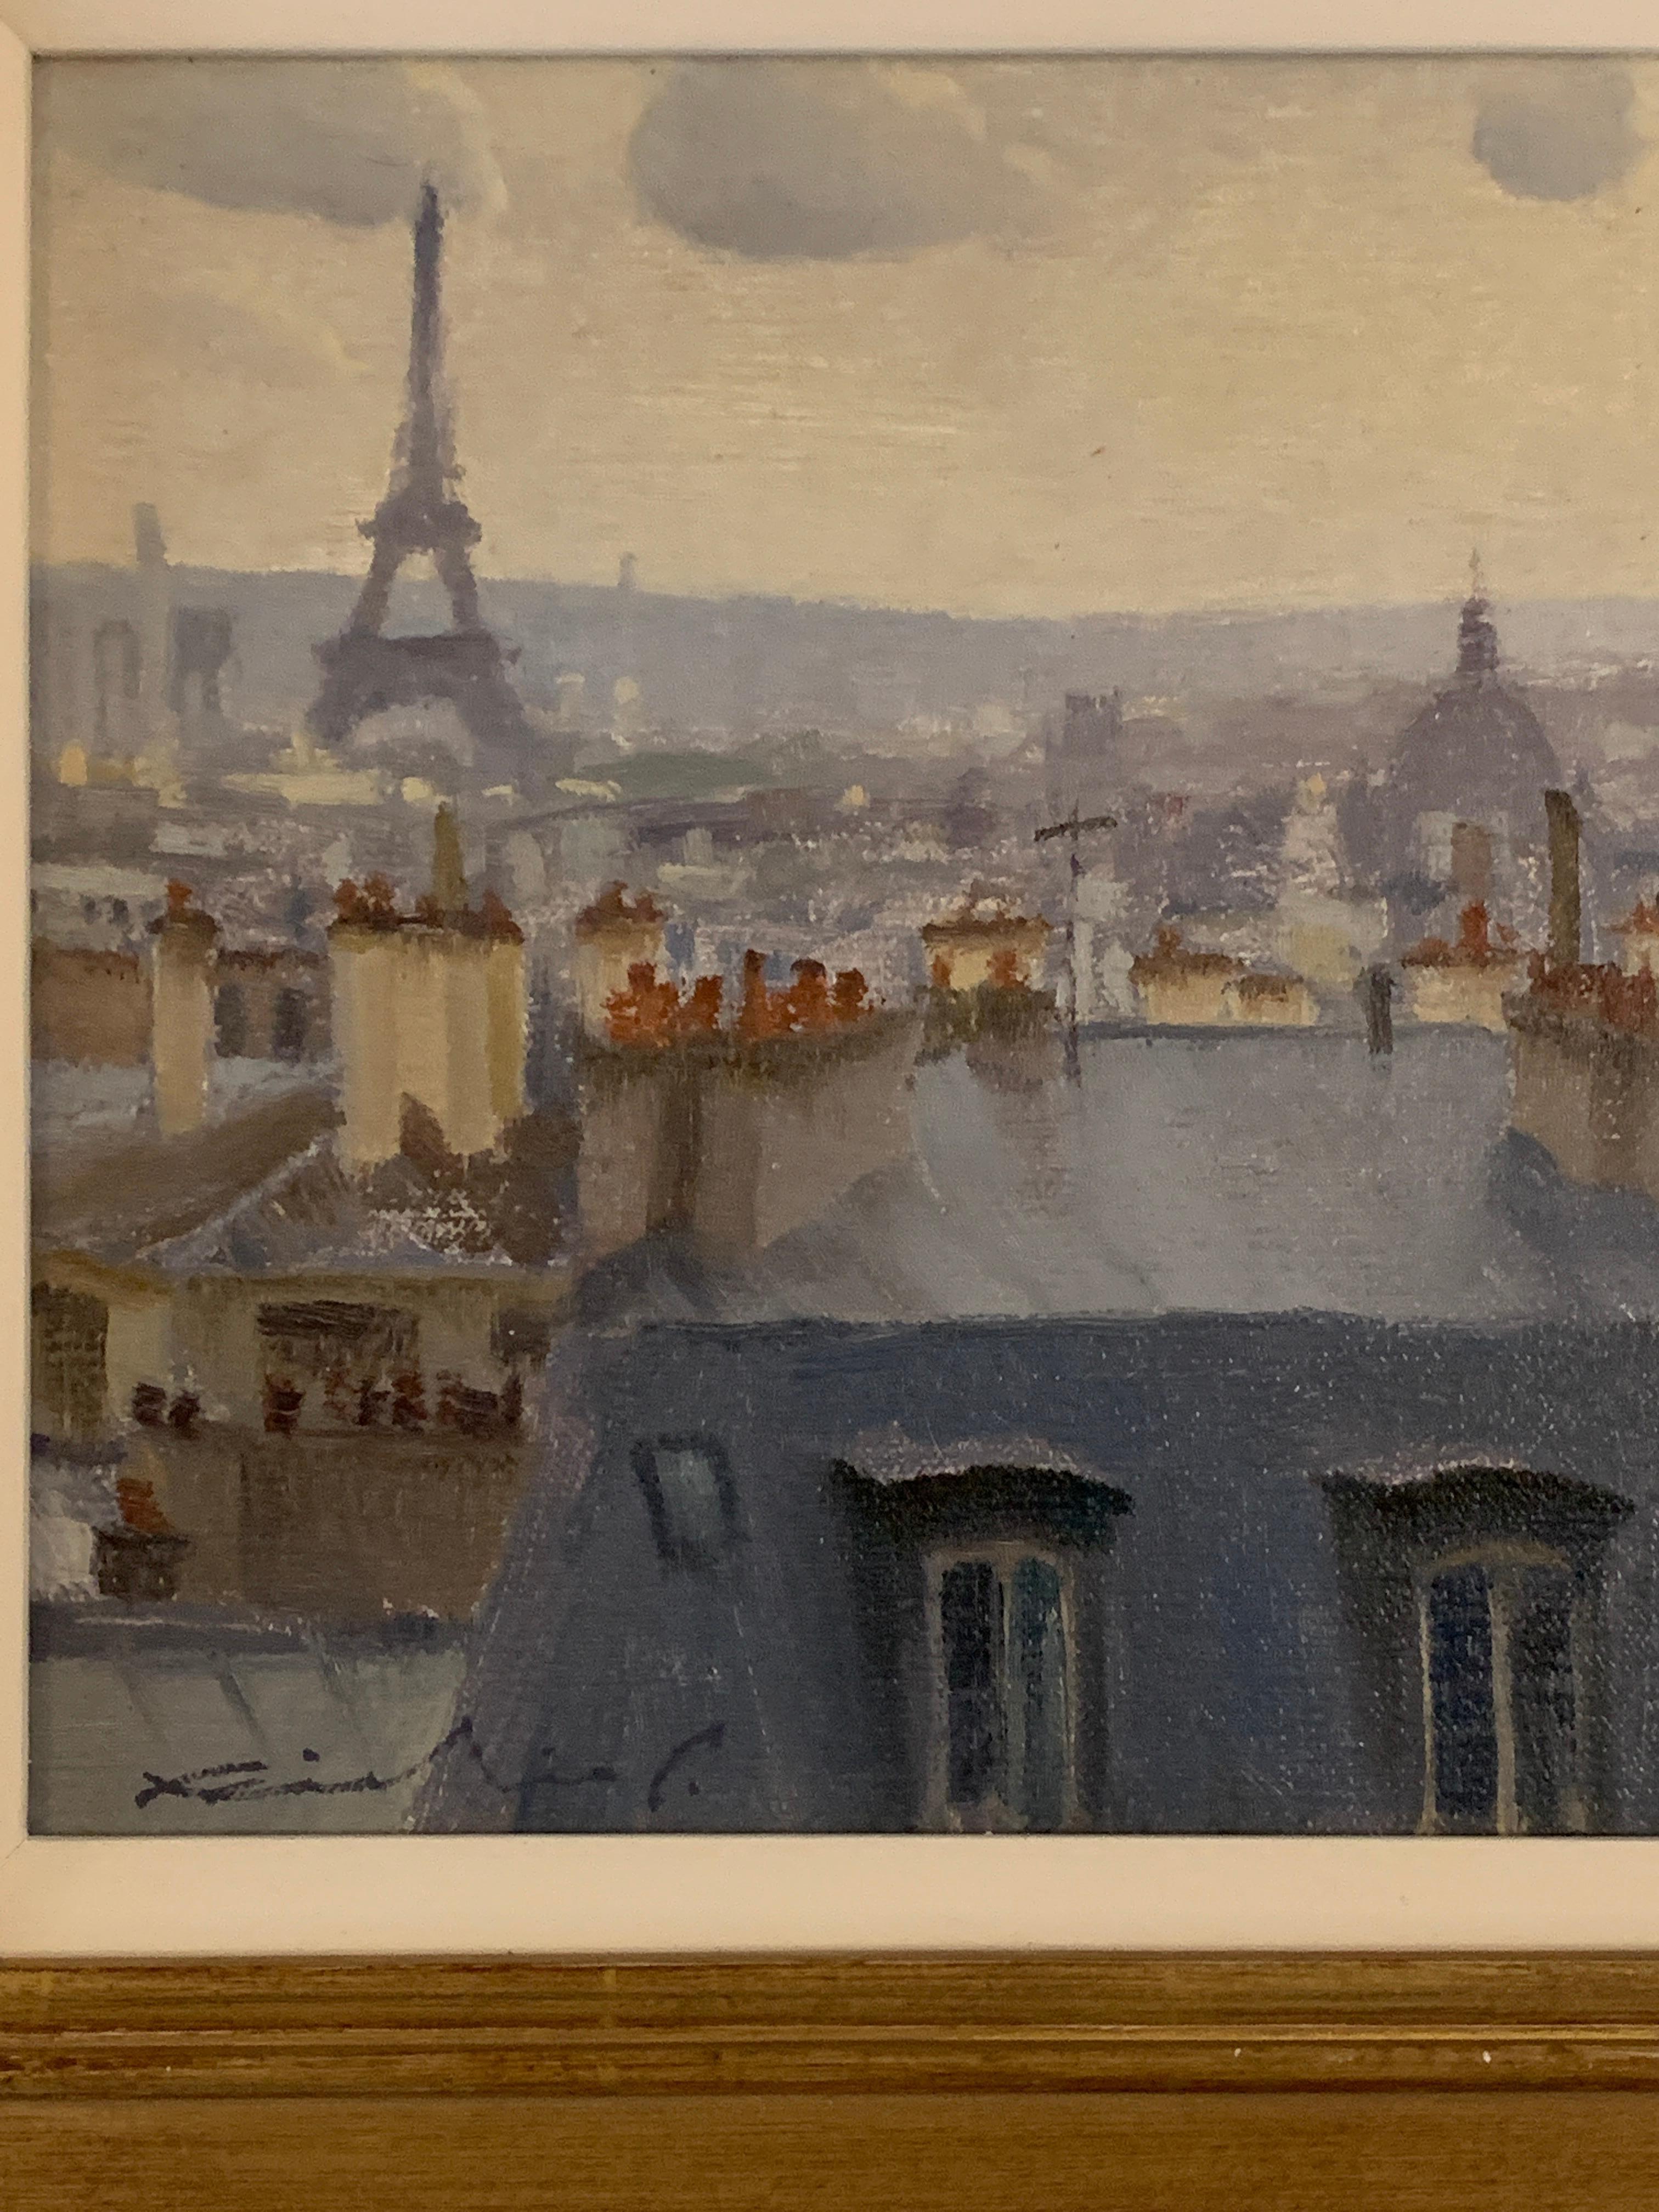 Französische Dachdeckenszene, mit dem Eiffelturm, Paris, Frankreich, Impressionismus – Painting von Richie Carter